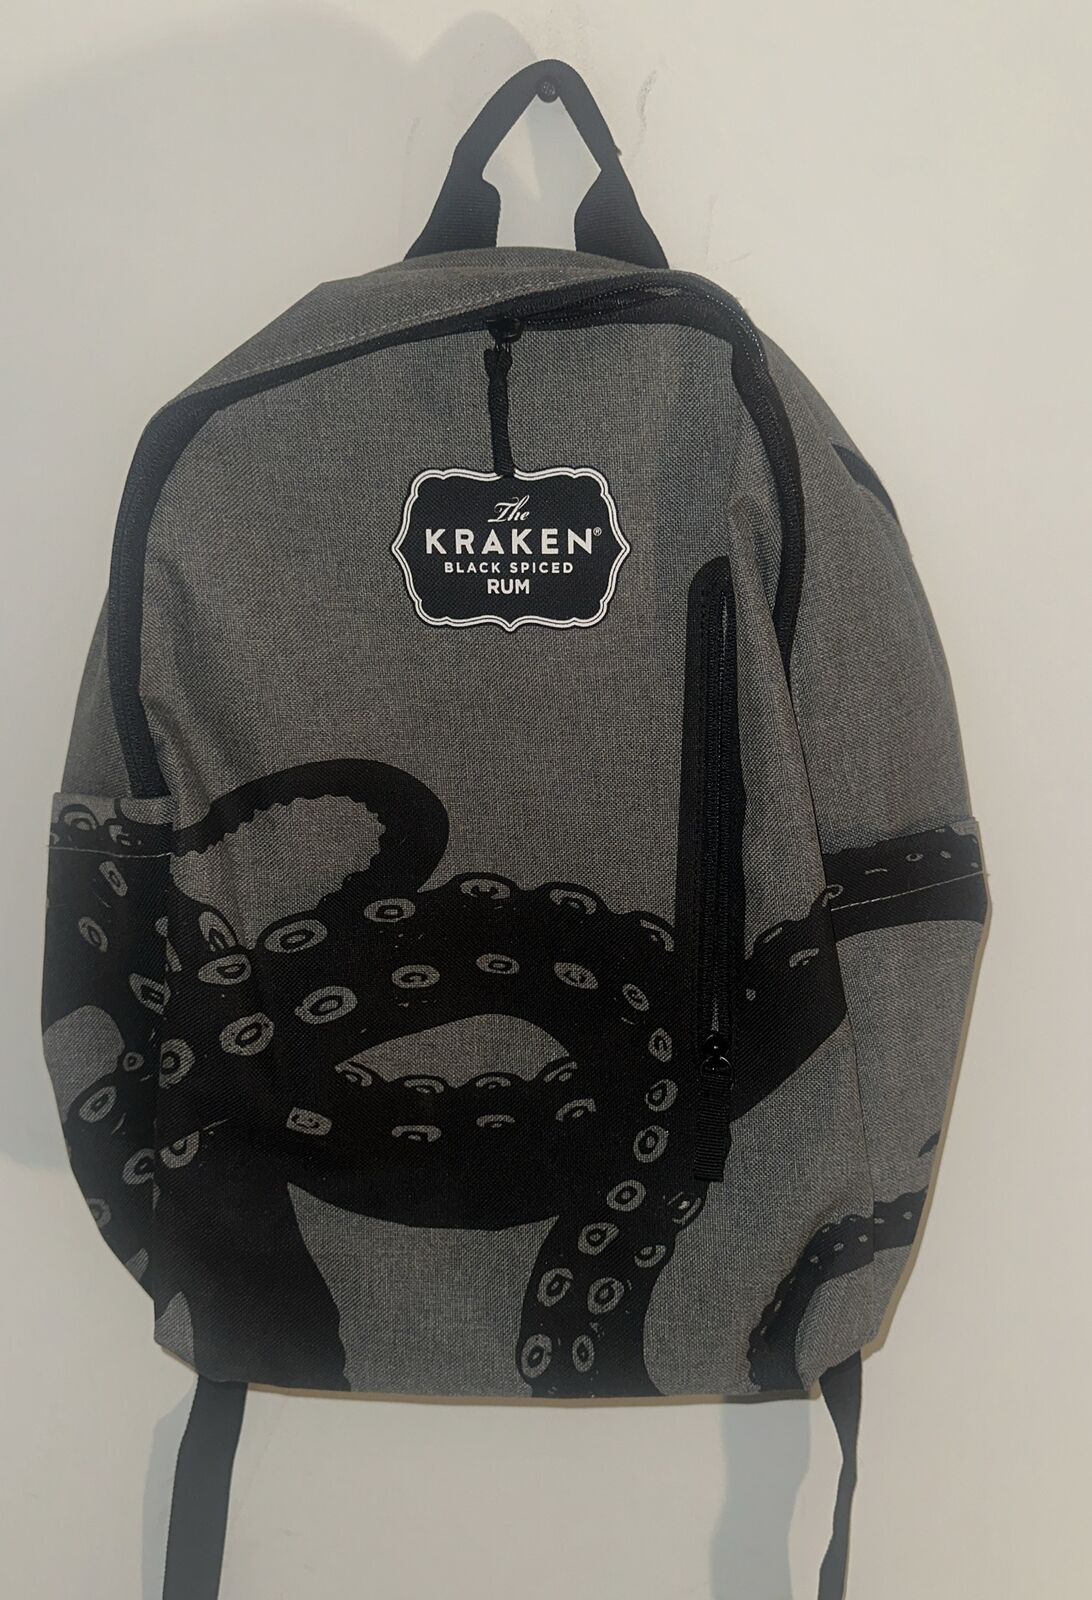 The Kraken Black Spiced RUM Backpack New